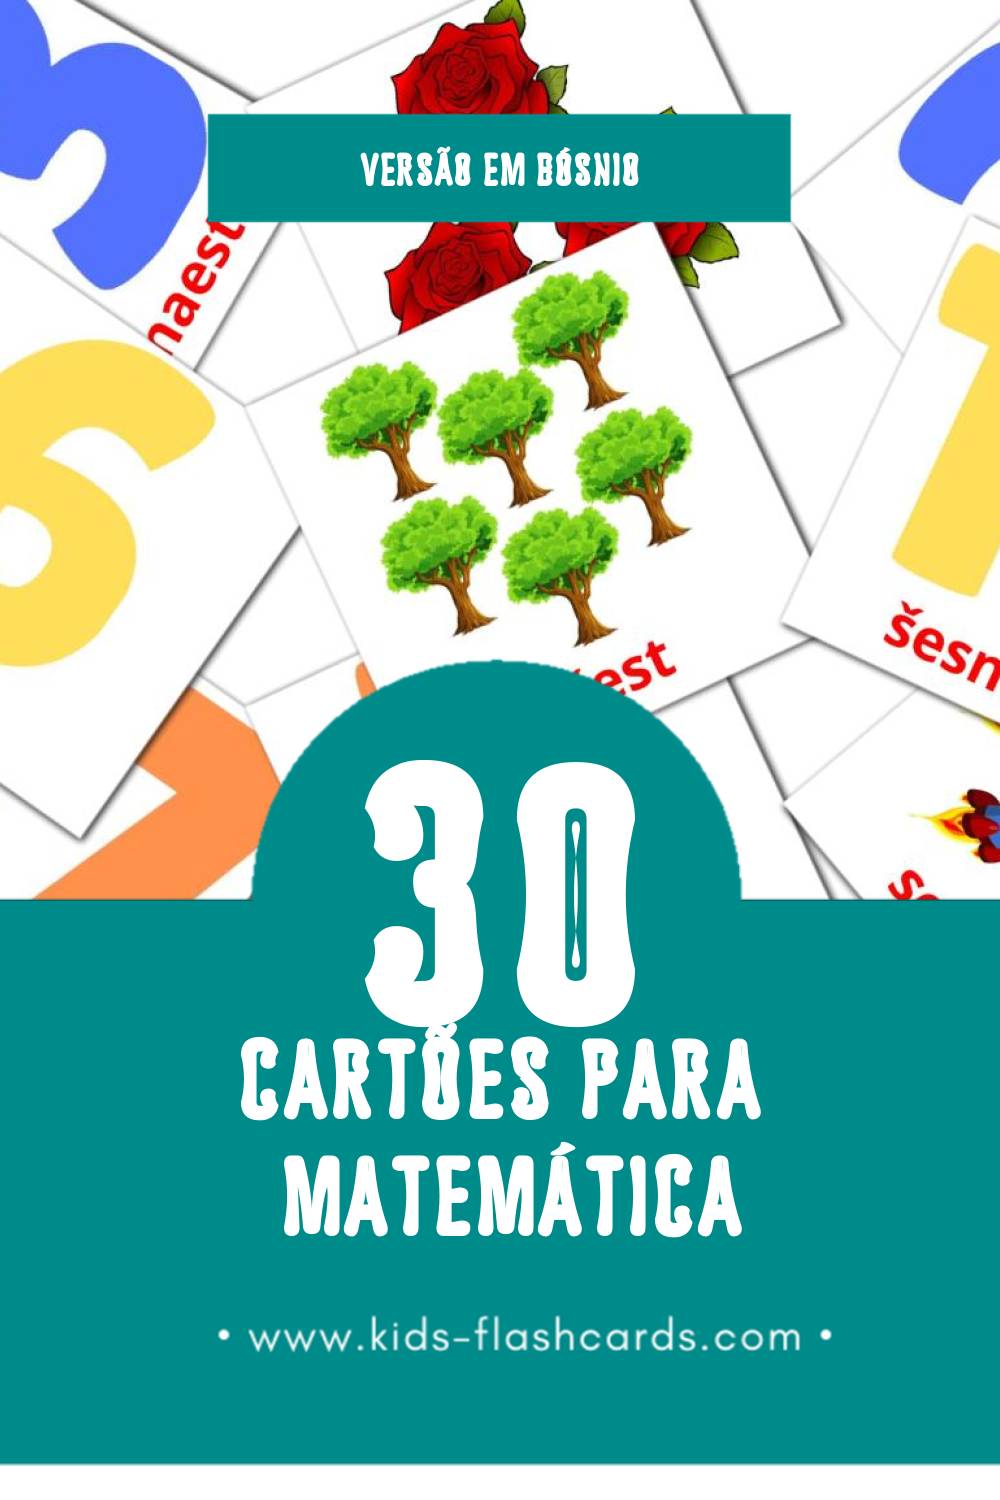 Flashcards de Maths Visuais para Toddlers (30 cartões em Bósnio)